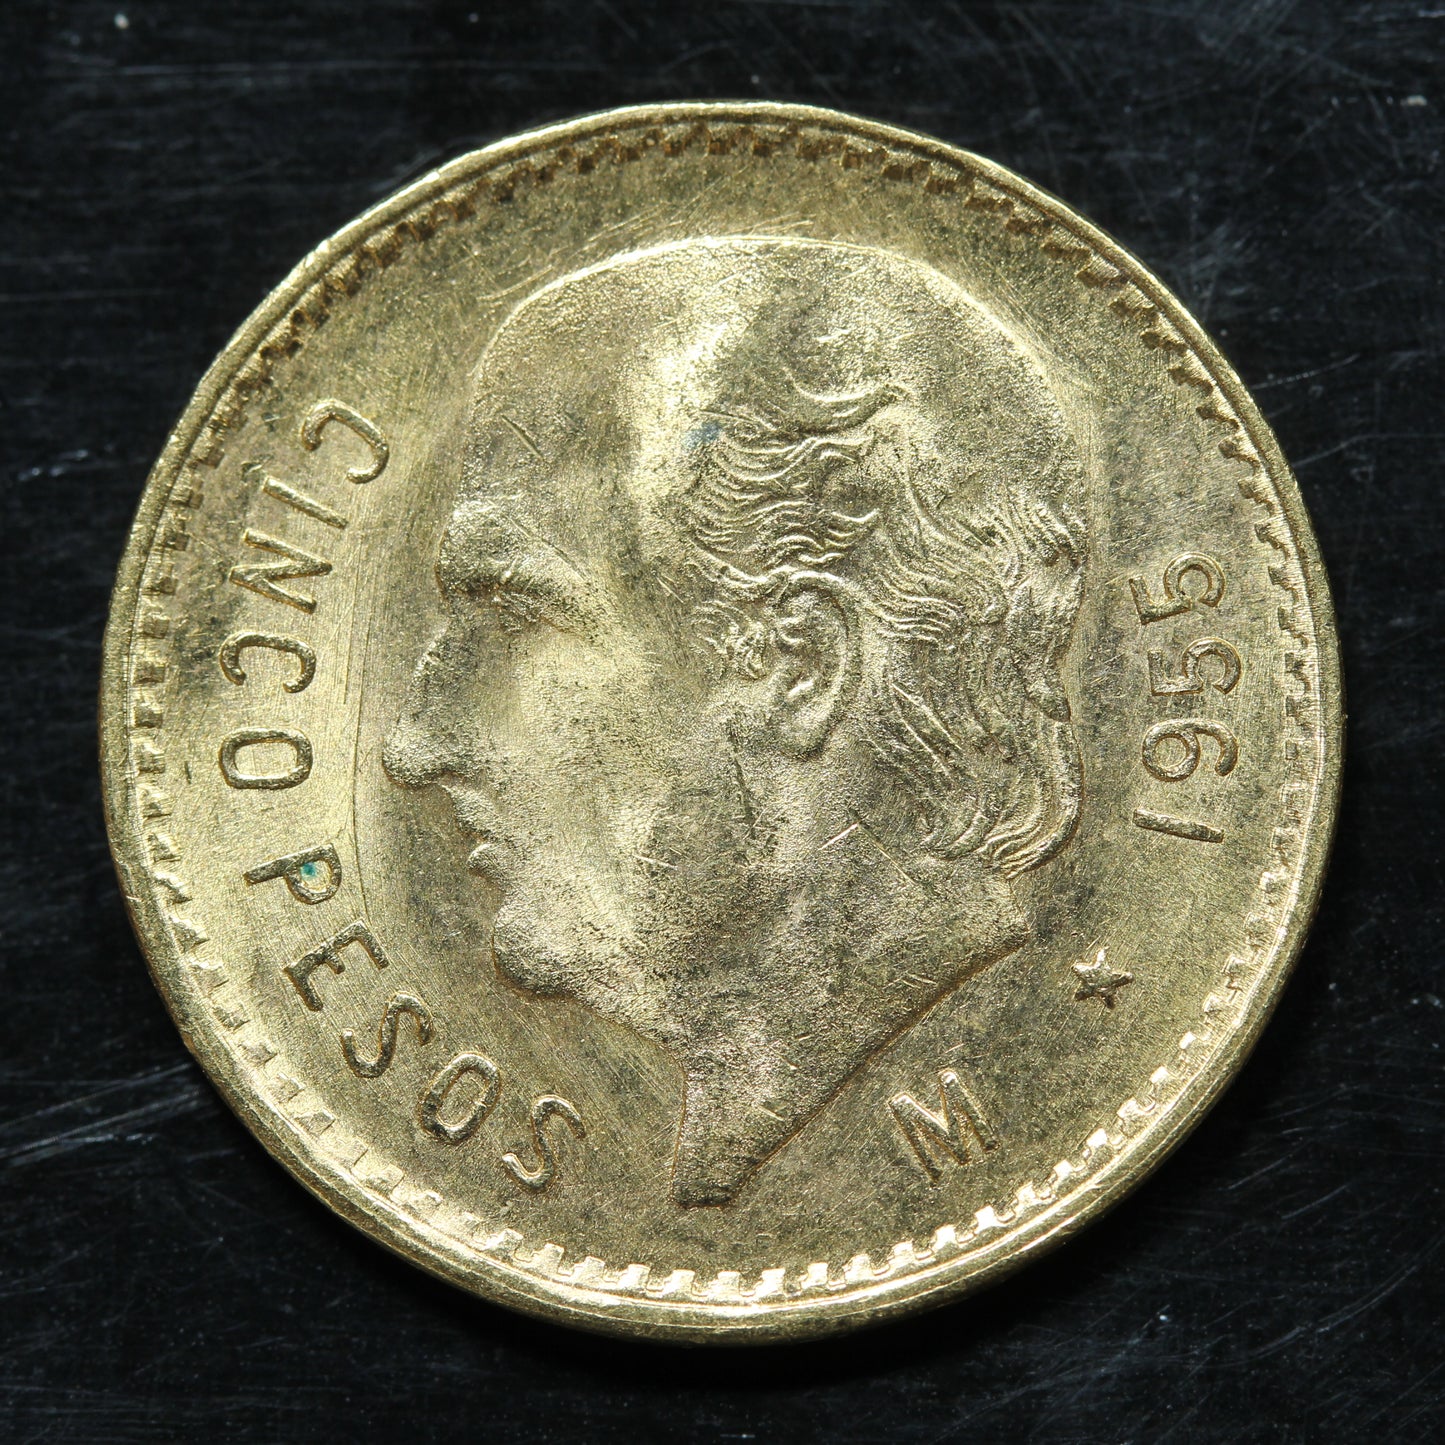 1955 5 Pesos Cinco Pesos Mexico Gold Coin